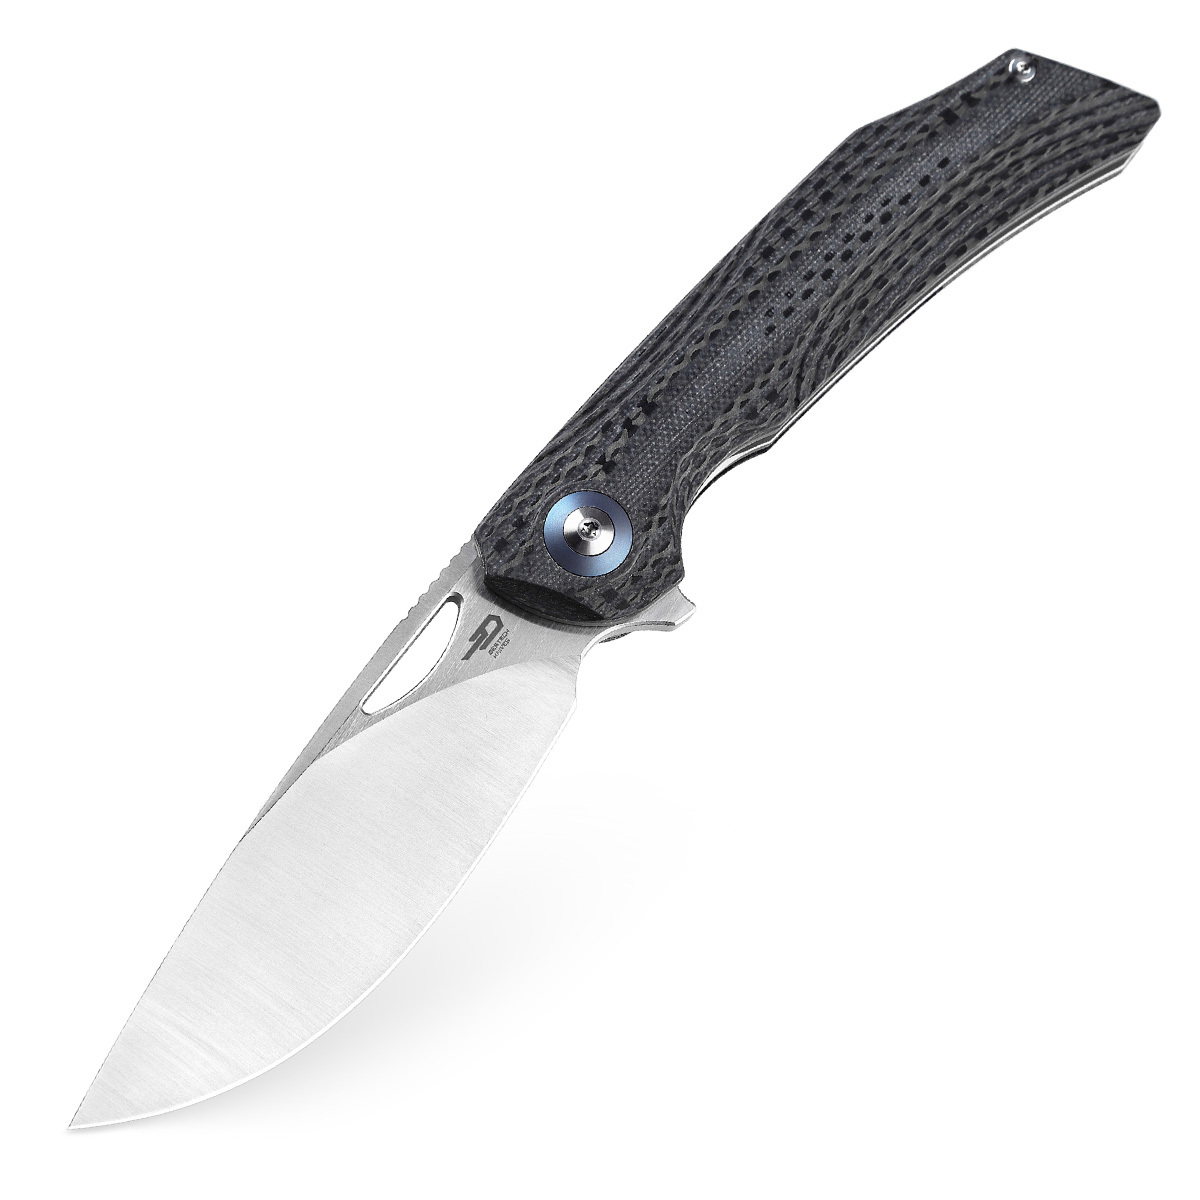 Складной нож Bestech Falko, сталь 154CM, рукоять G10/Carbon fiber складной нож bestech kasta сталь m390 рукоять титан carbon